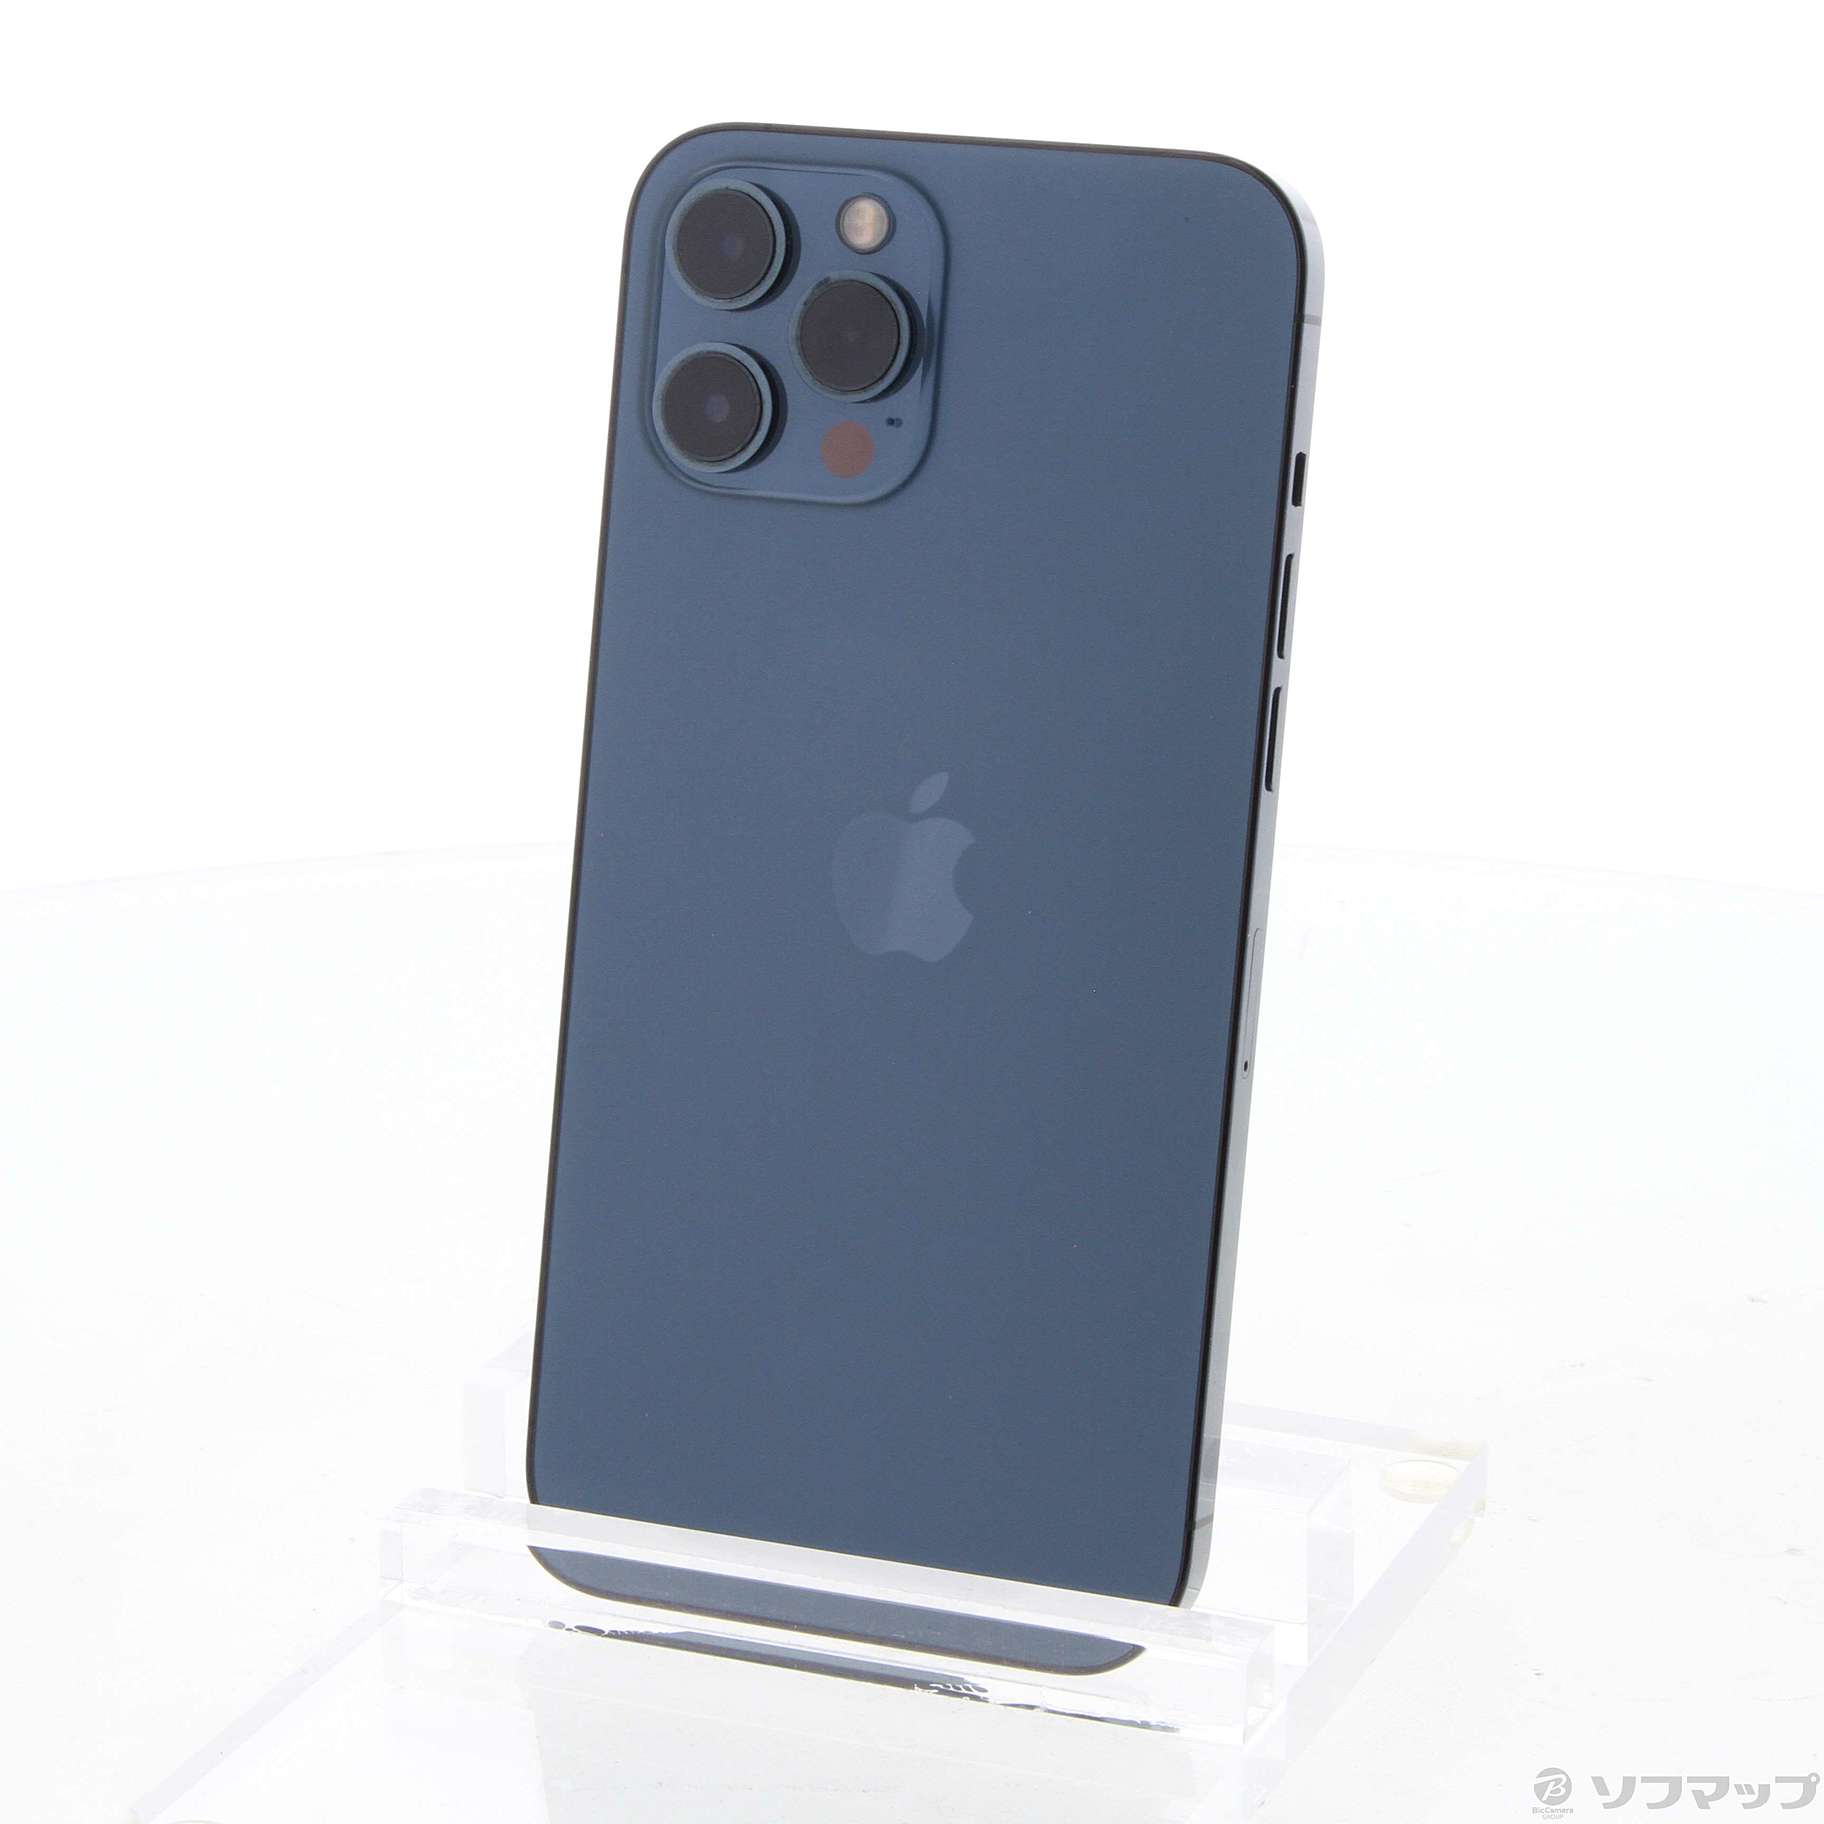 iPhone12 Pro Max 256GB パシフィックブルー